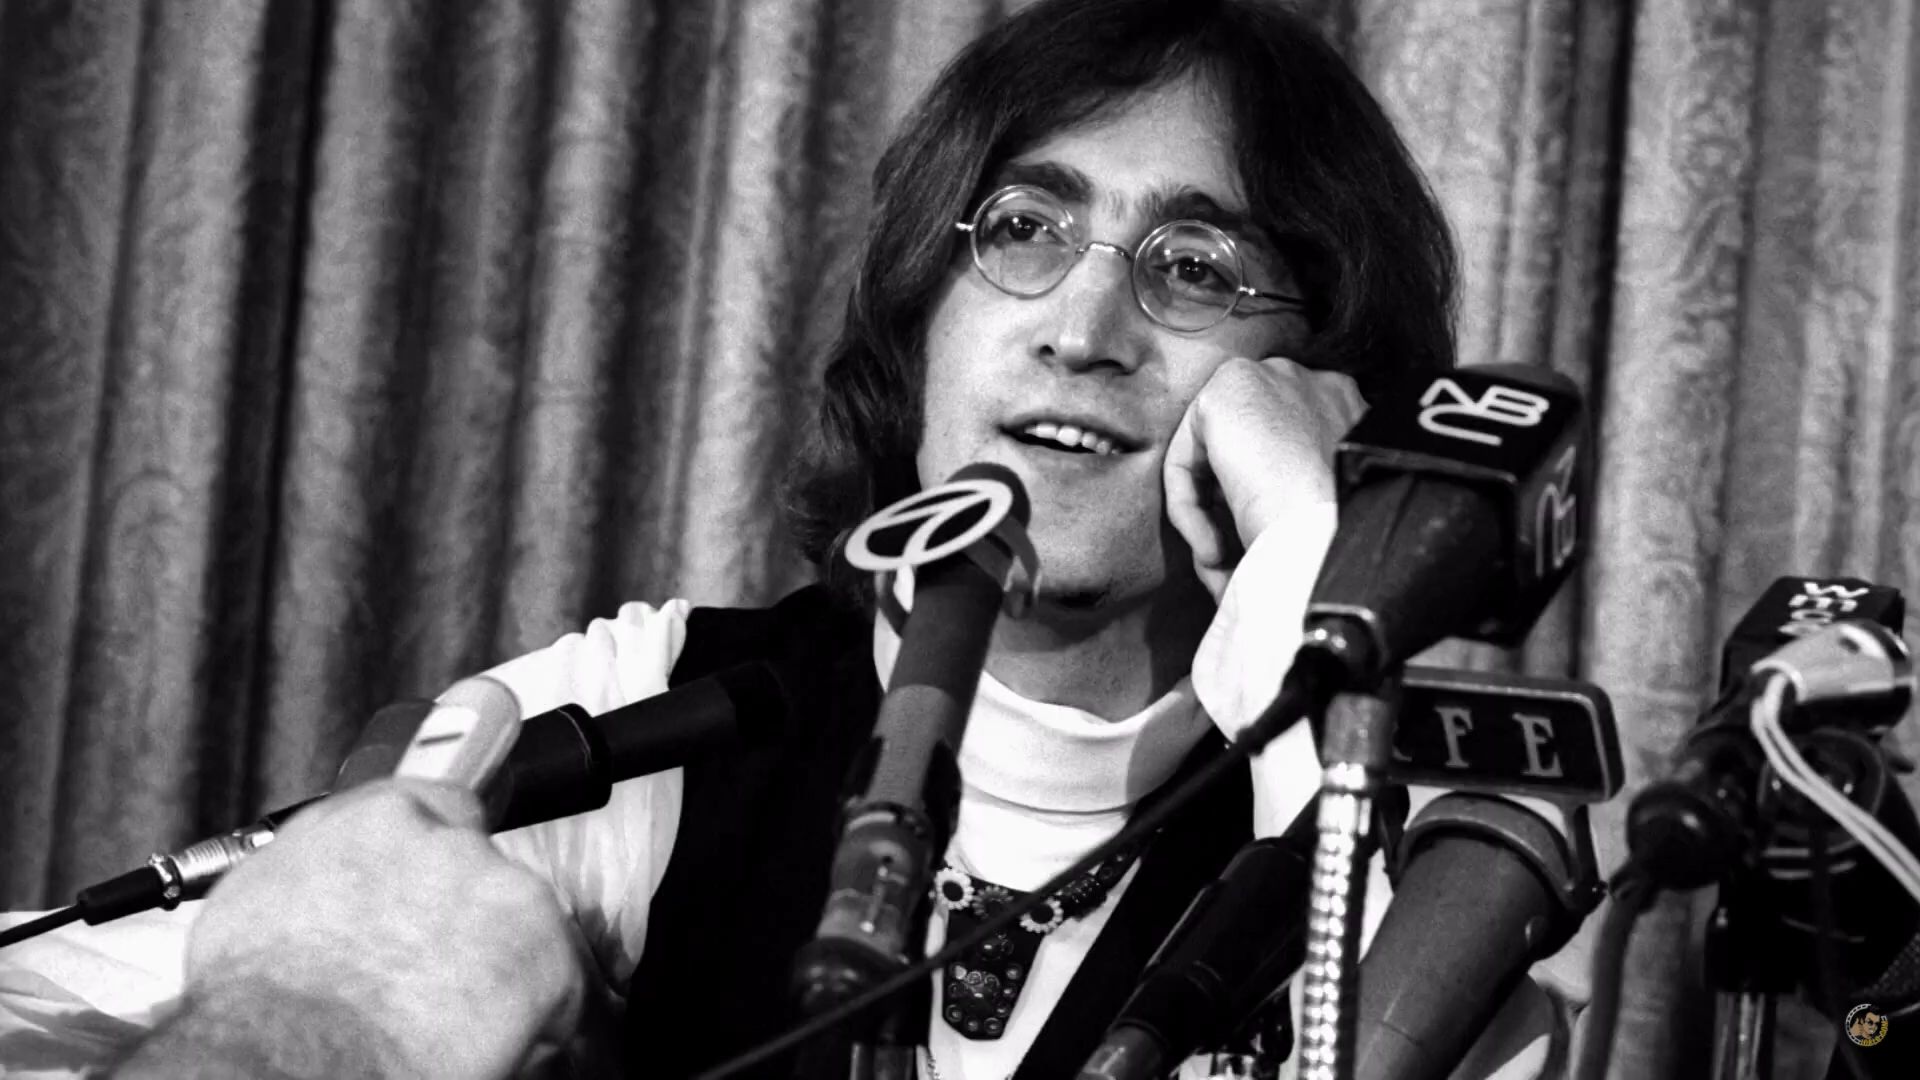 Le saviez-vous : John Lennon avait provoqué le Vatican 